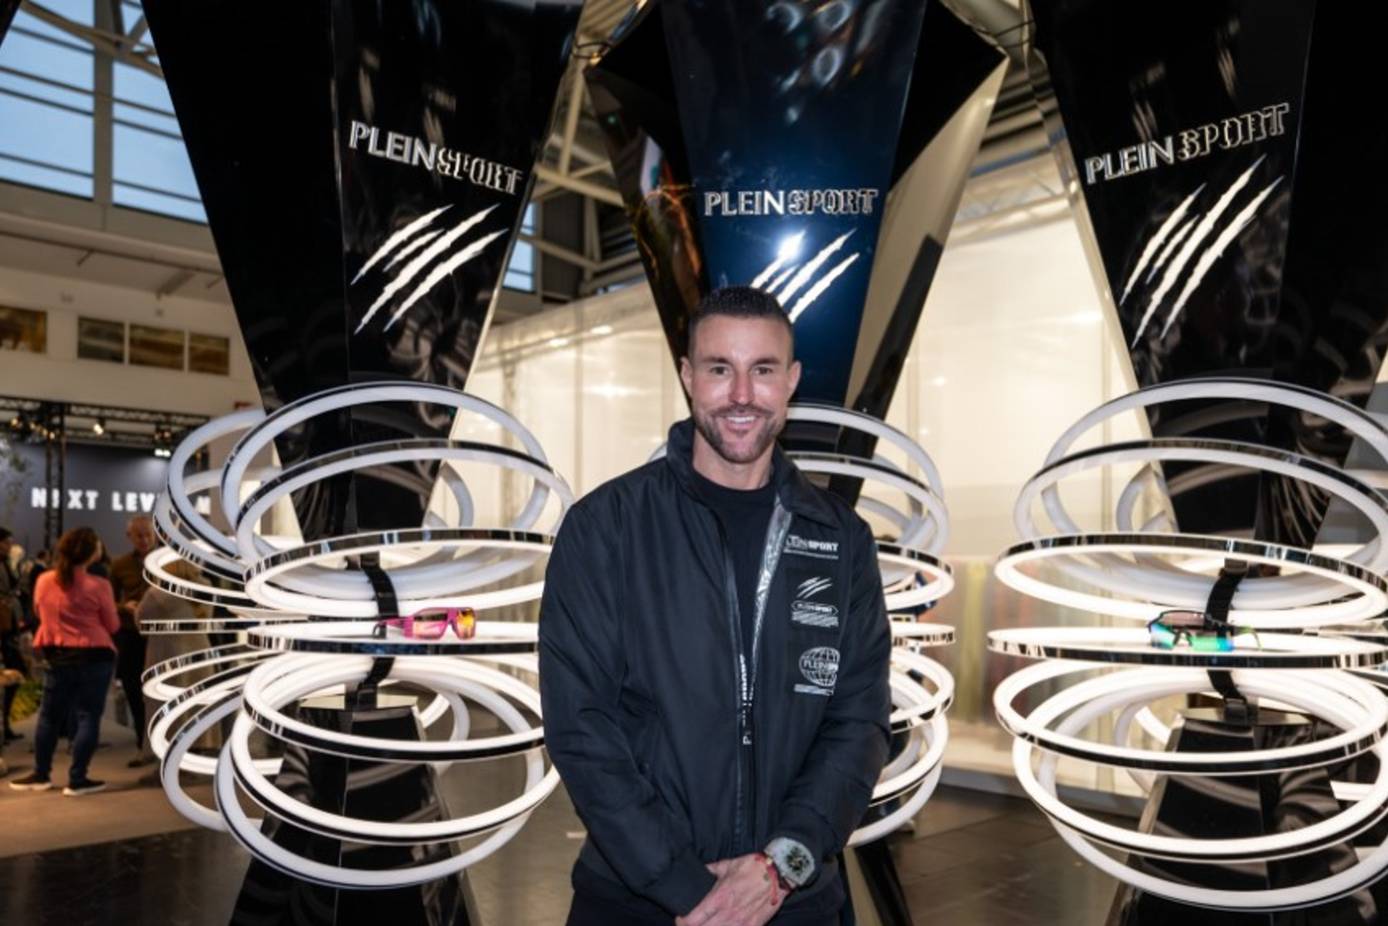 Philipp Plein's new direction: Plein Sport luxury sportswear for